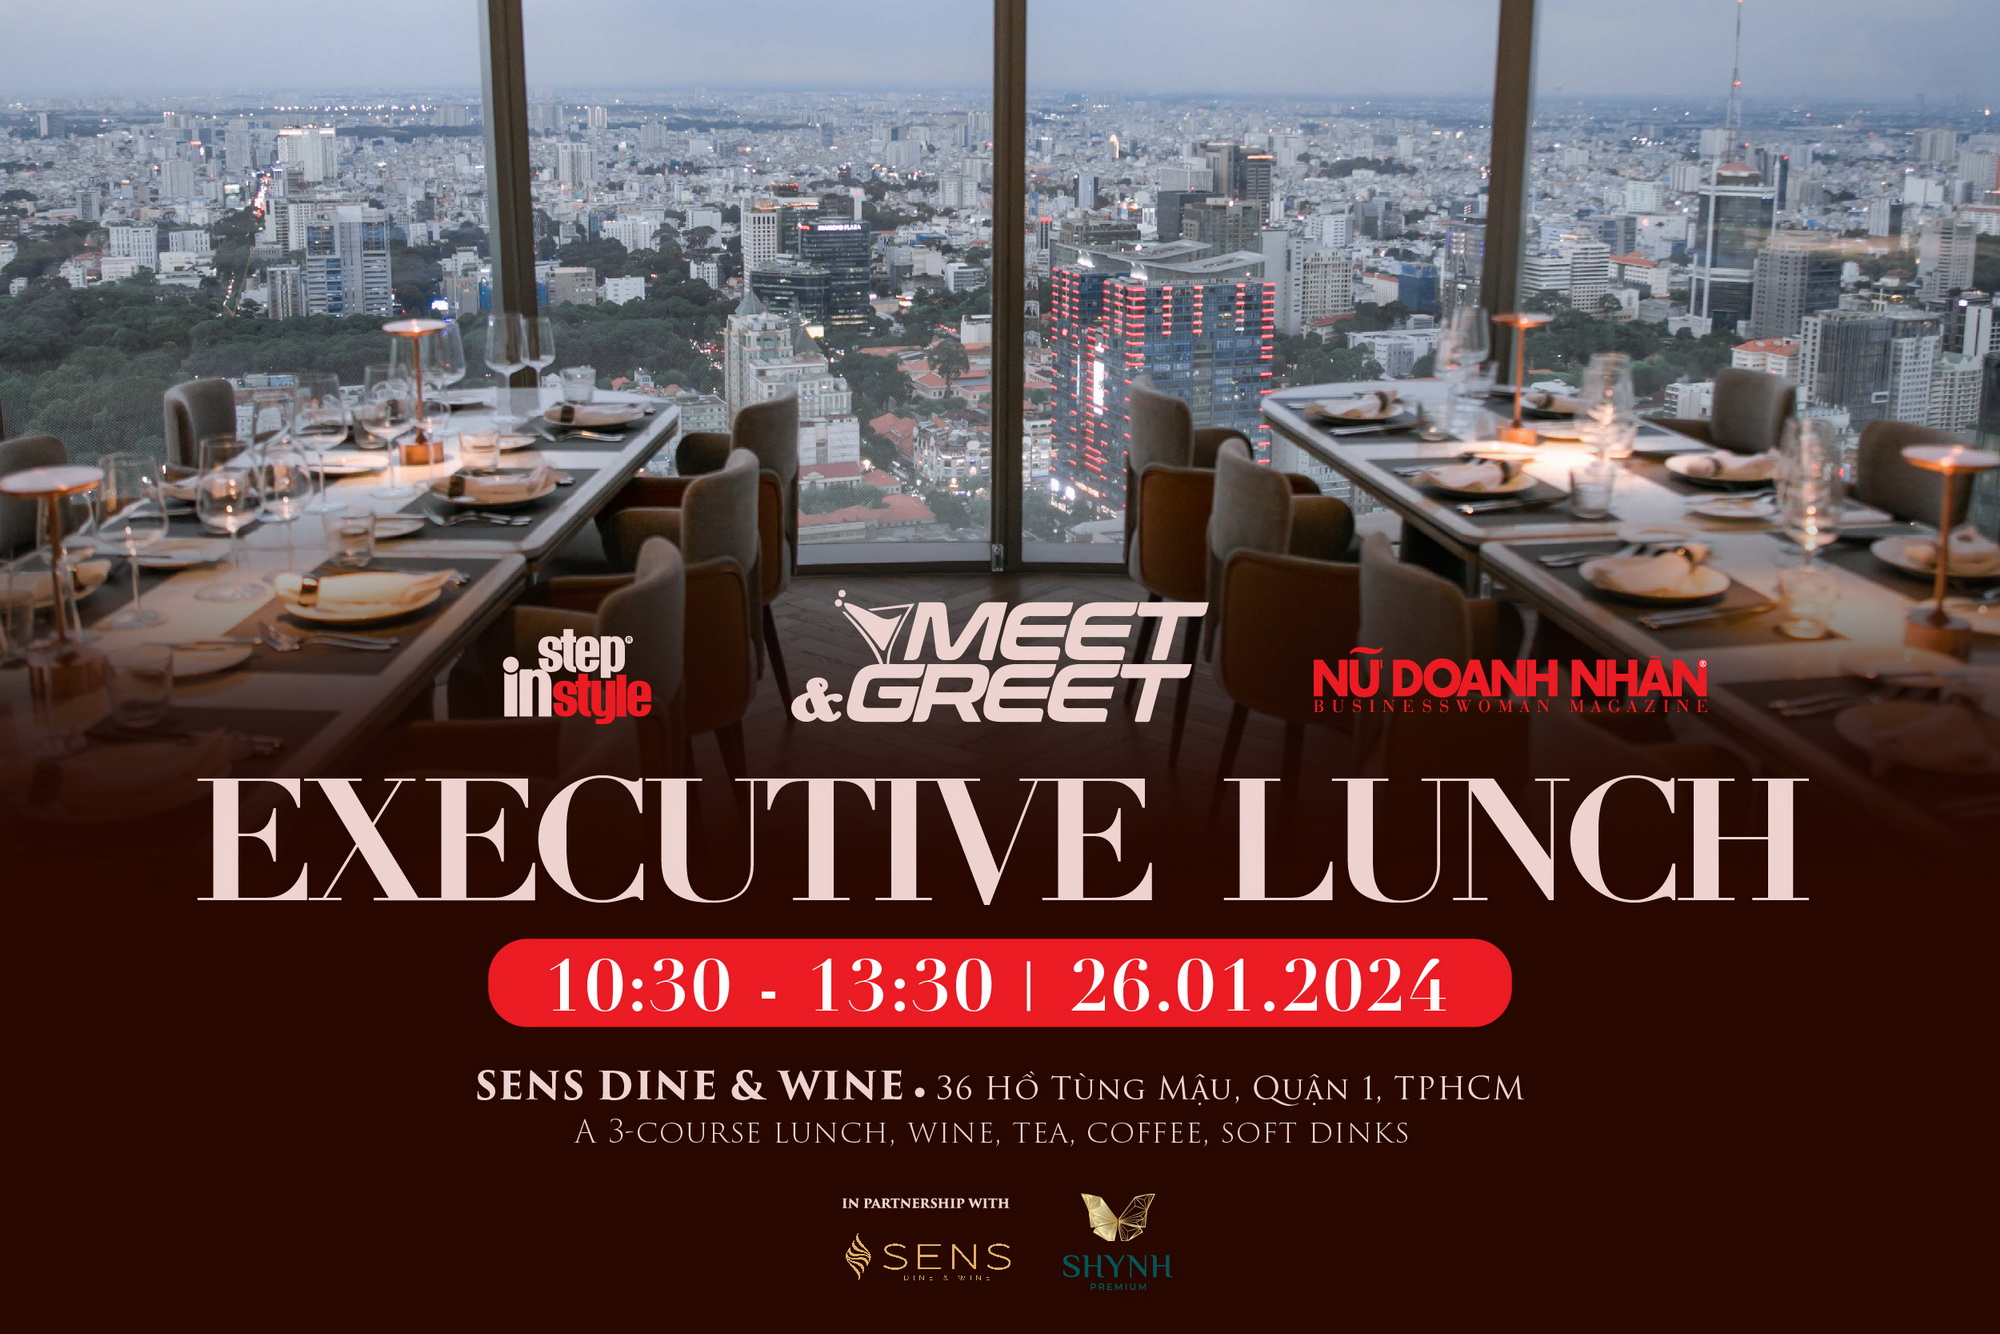 Greet & Meet: Executive Lunch do Tạp chí Nữ Doanh Nhân và Step in Style tổ chức